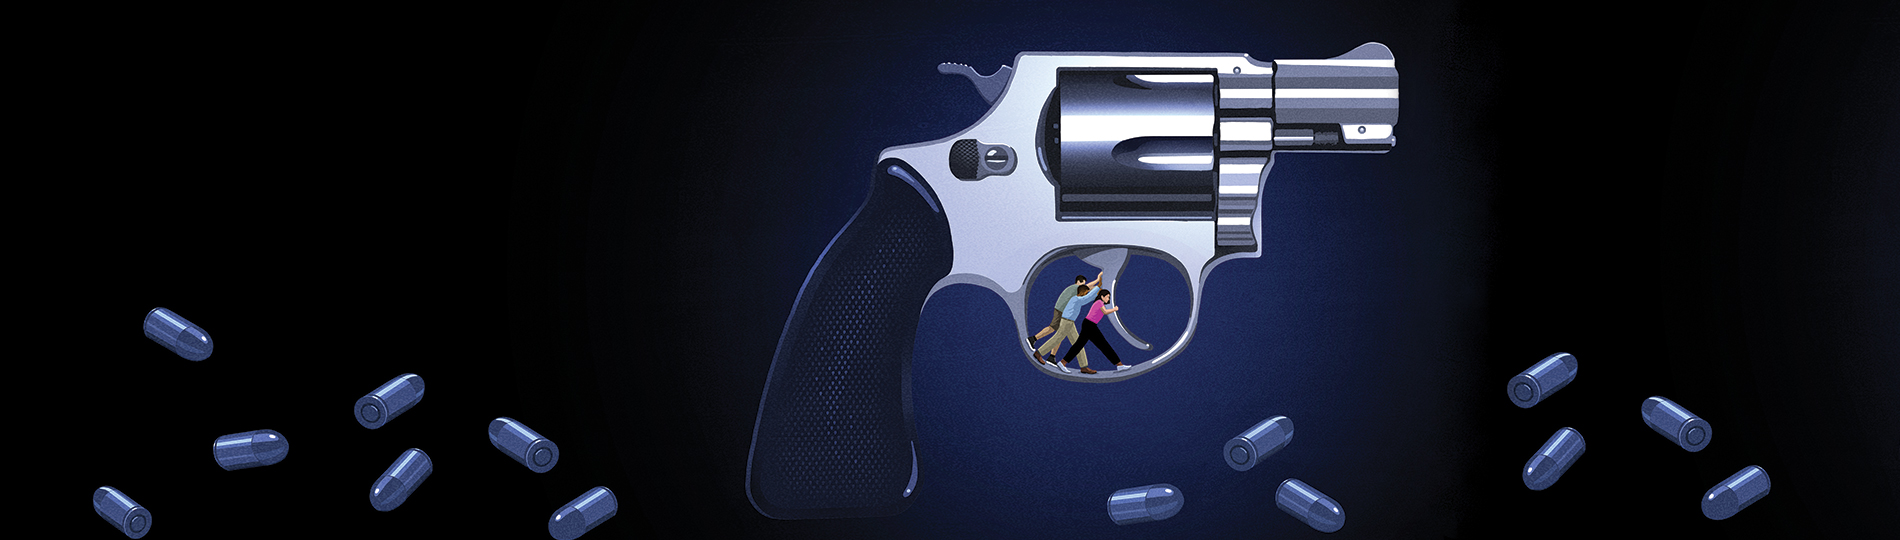 Illustration of people holding back gun trigger.